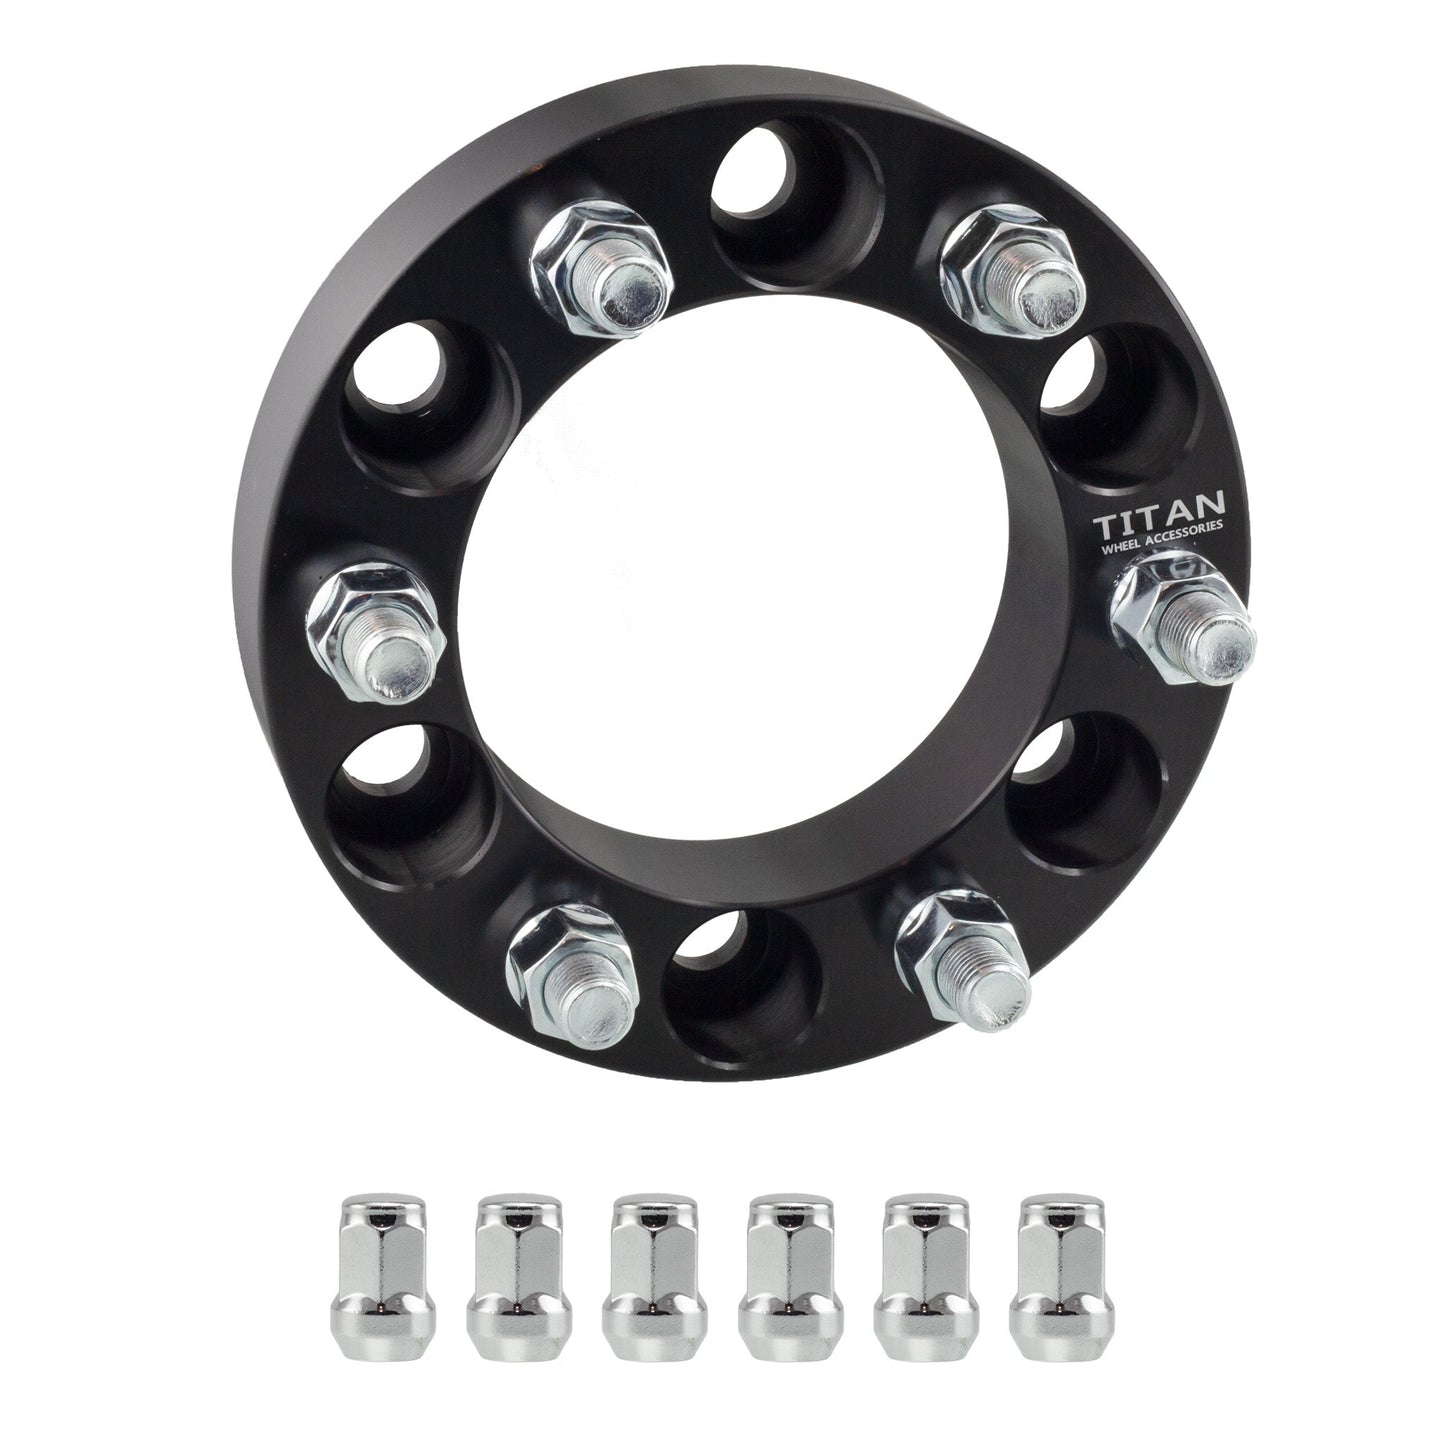 38mm (1.5") Titan Wheel Spacers for Infiniti QX80 Nissan Titan XD Ram 1500 | 6x5.5 (6x139.7) | 77.8 Hubcentric |14x1.5 Studs | Titan Wheel Accessories